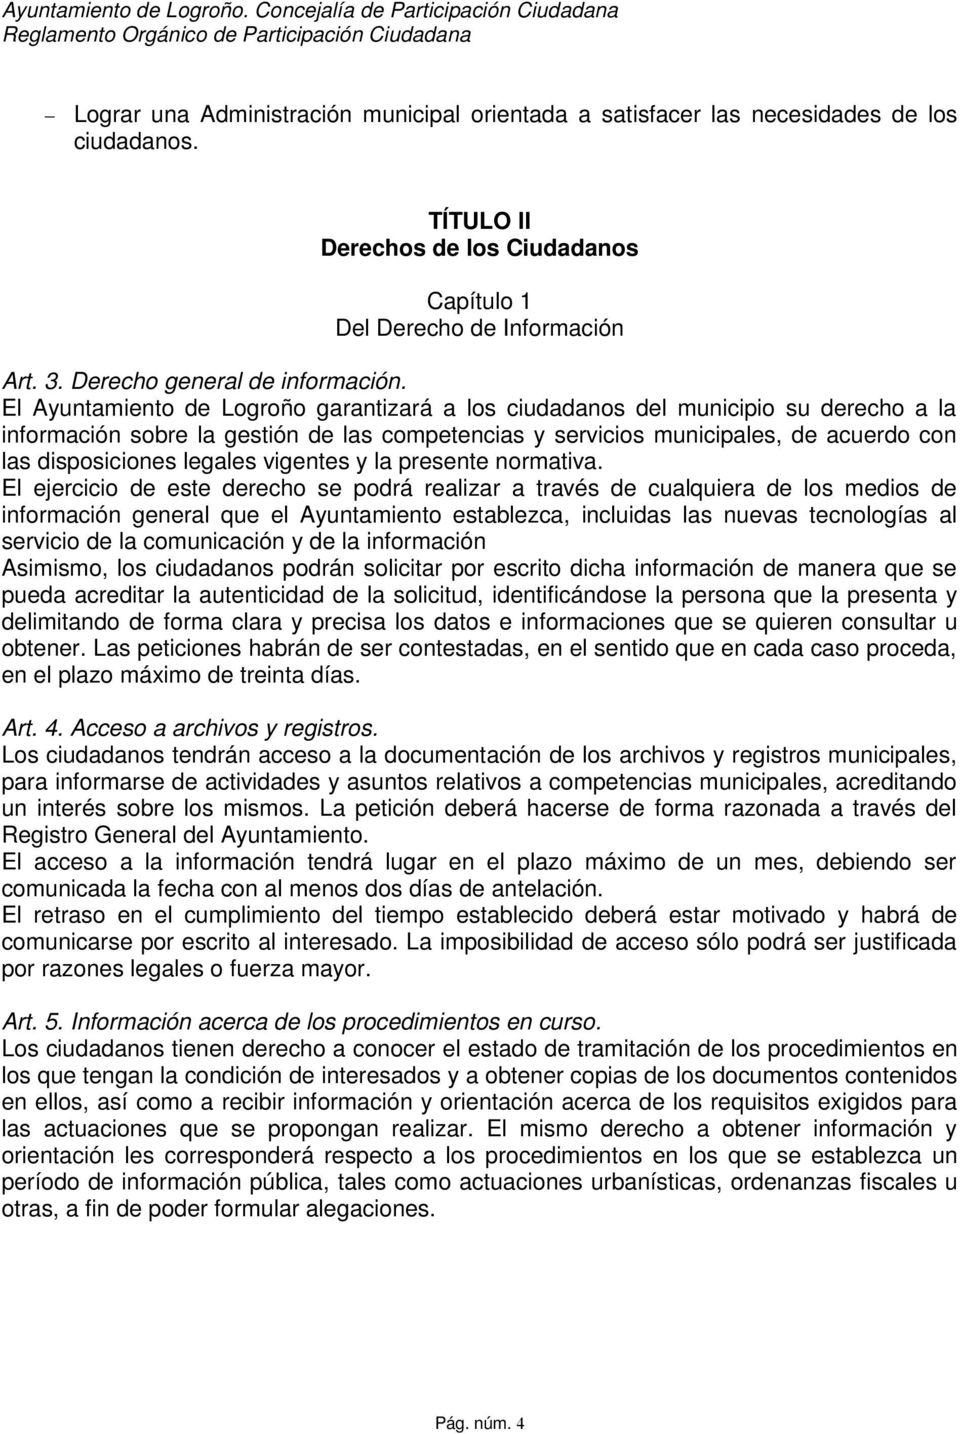 El Ayuntamiento de Logroño garantizará a los ciudadanos del municipio su derecho a la información sobre la gestión de las competencias y servicios municipales, de acuerdo con las disposiciones